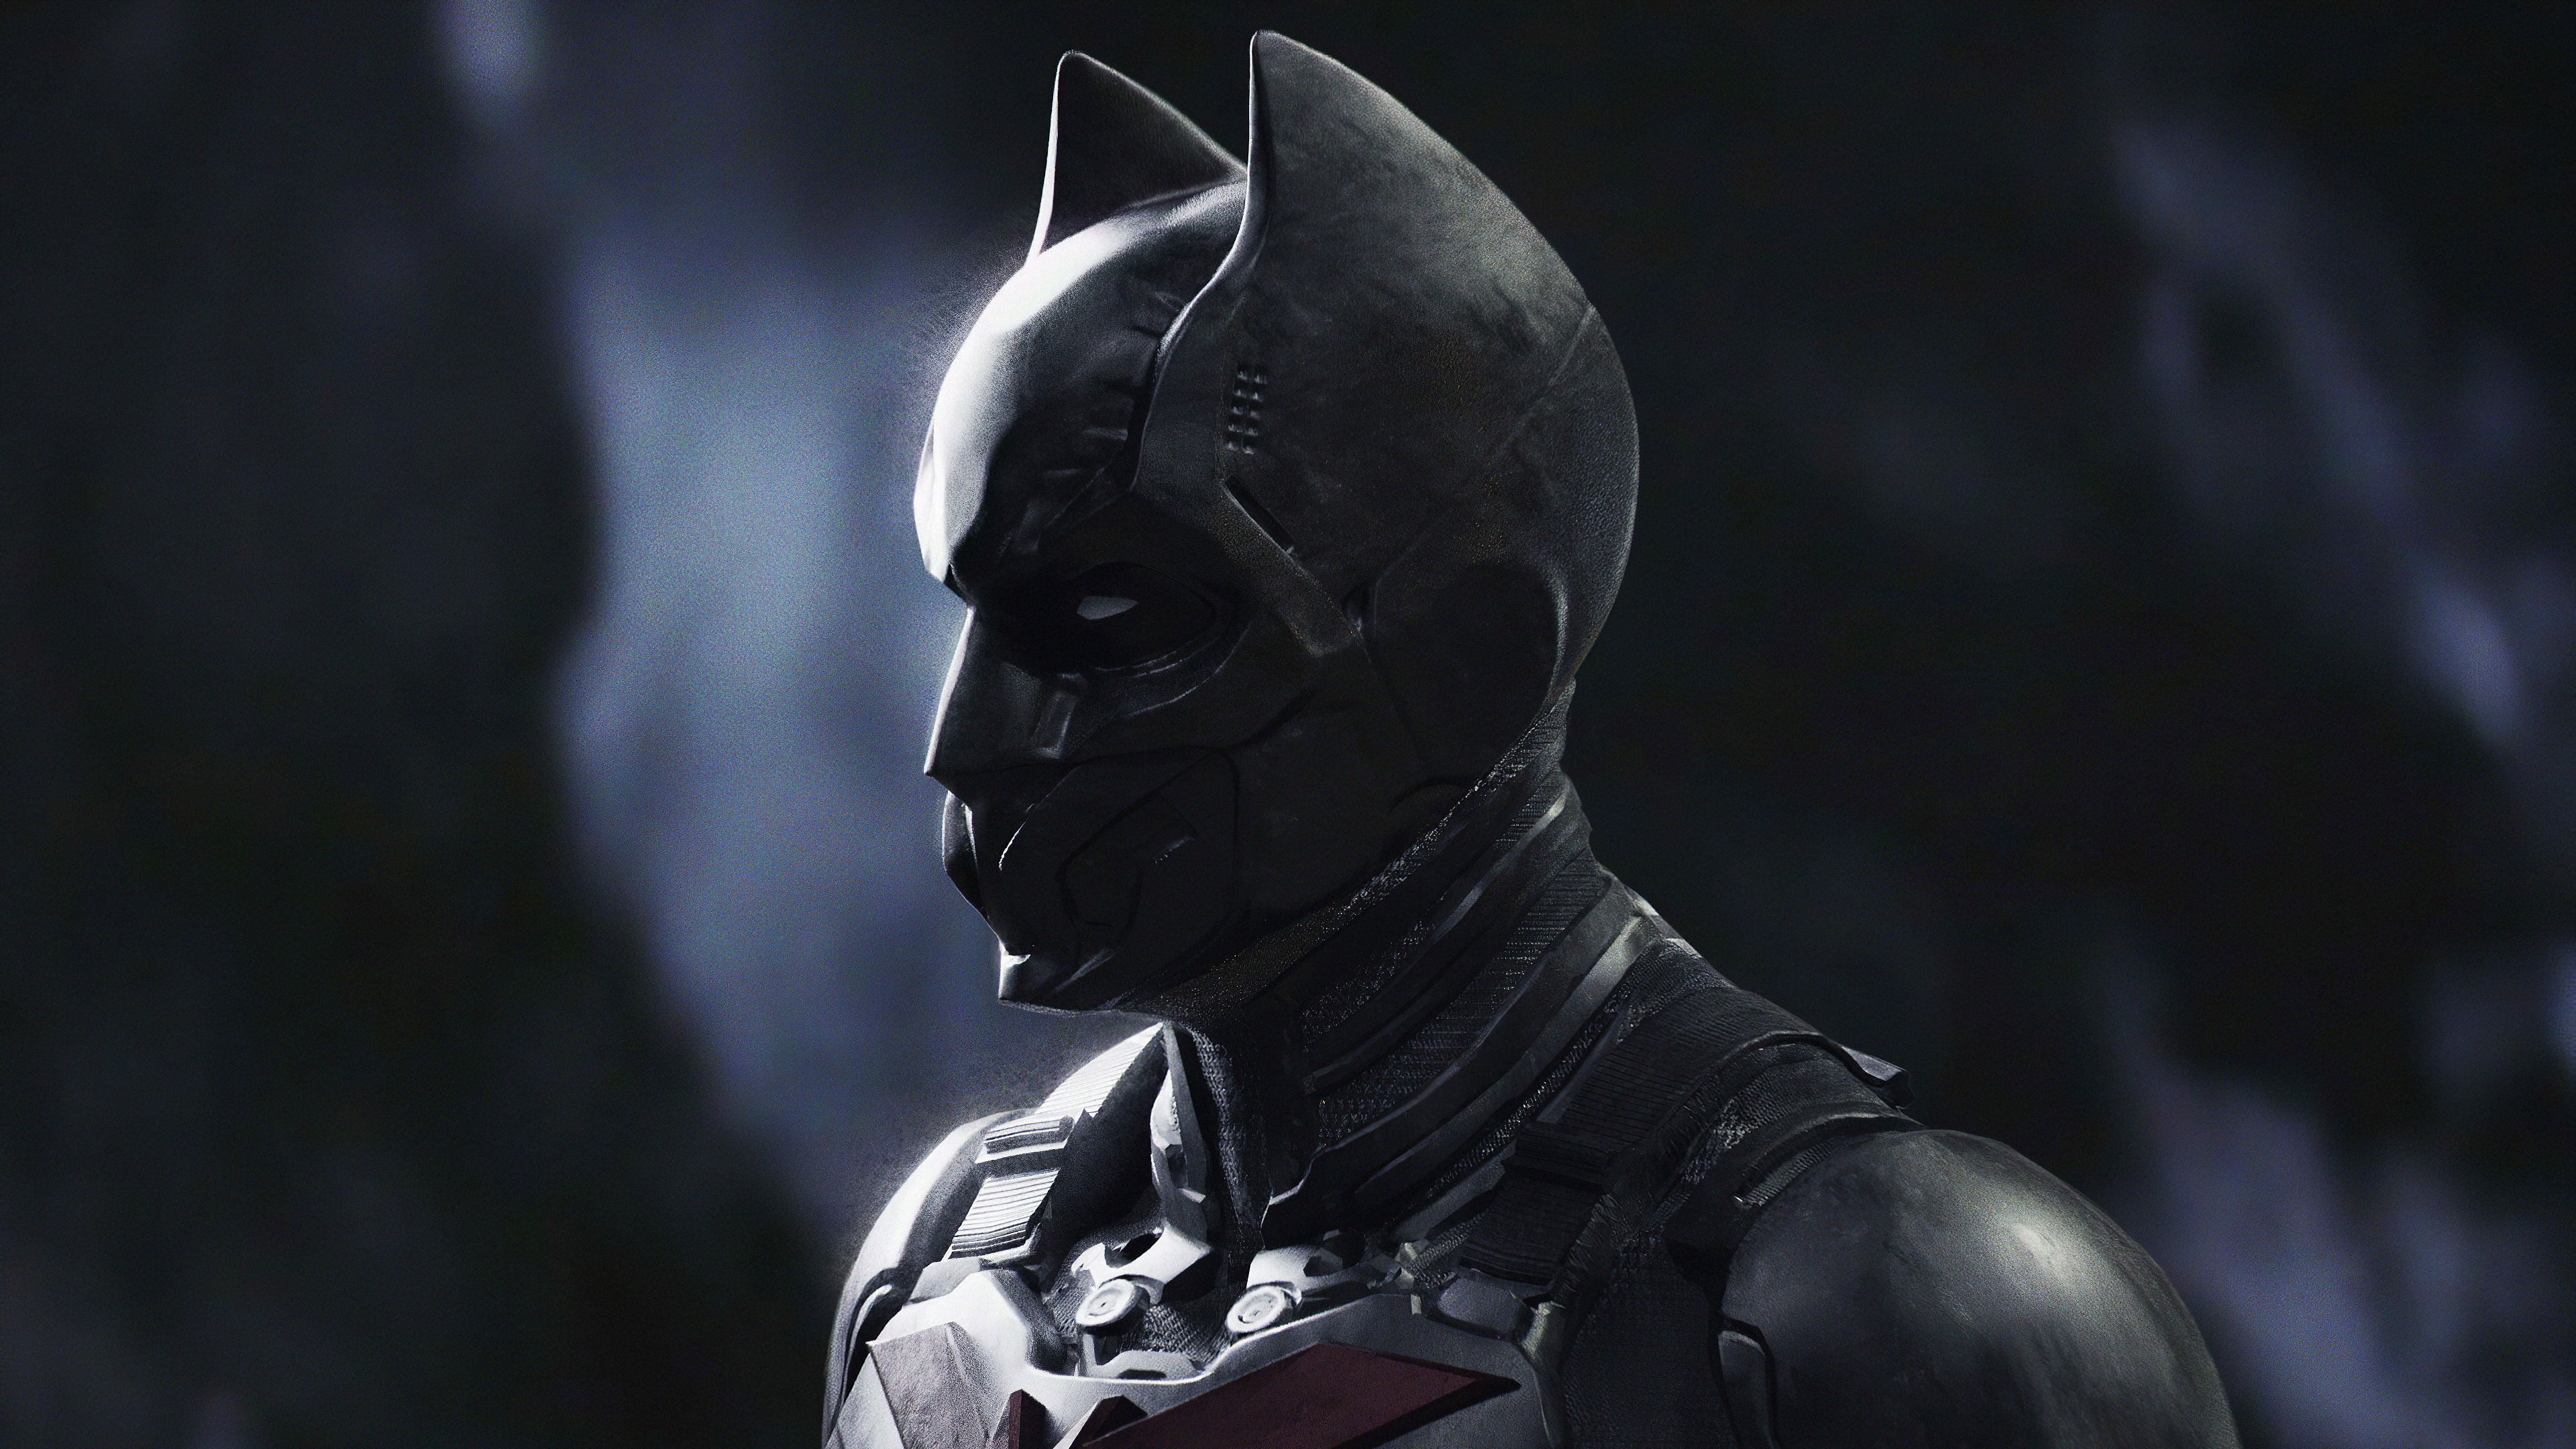 Full Mask Batman - Batman Beyond Concept Art Nolan - 3840x2160 Wallpaper -  